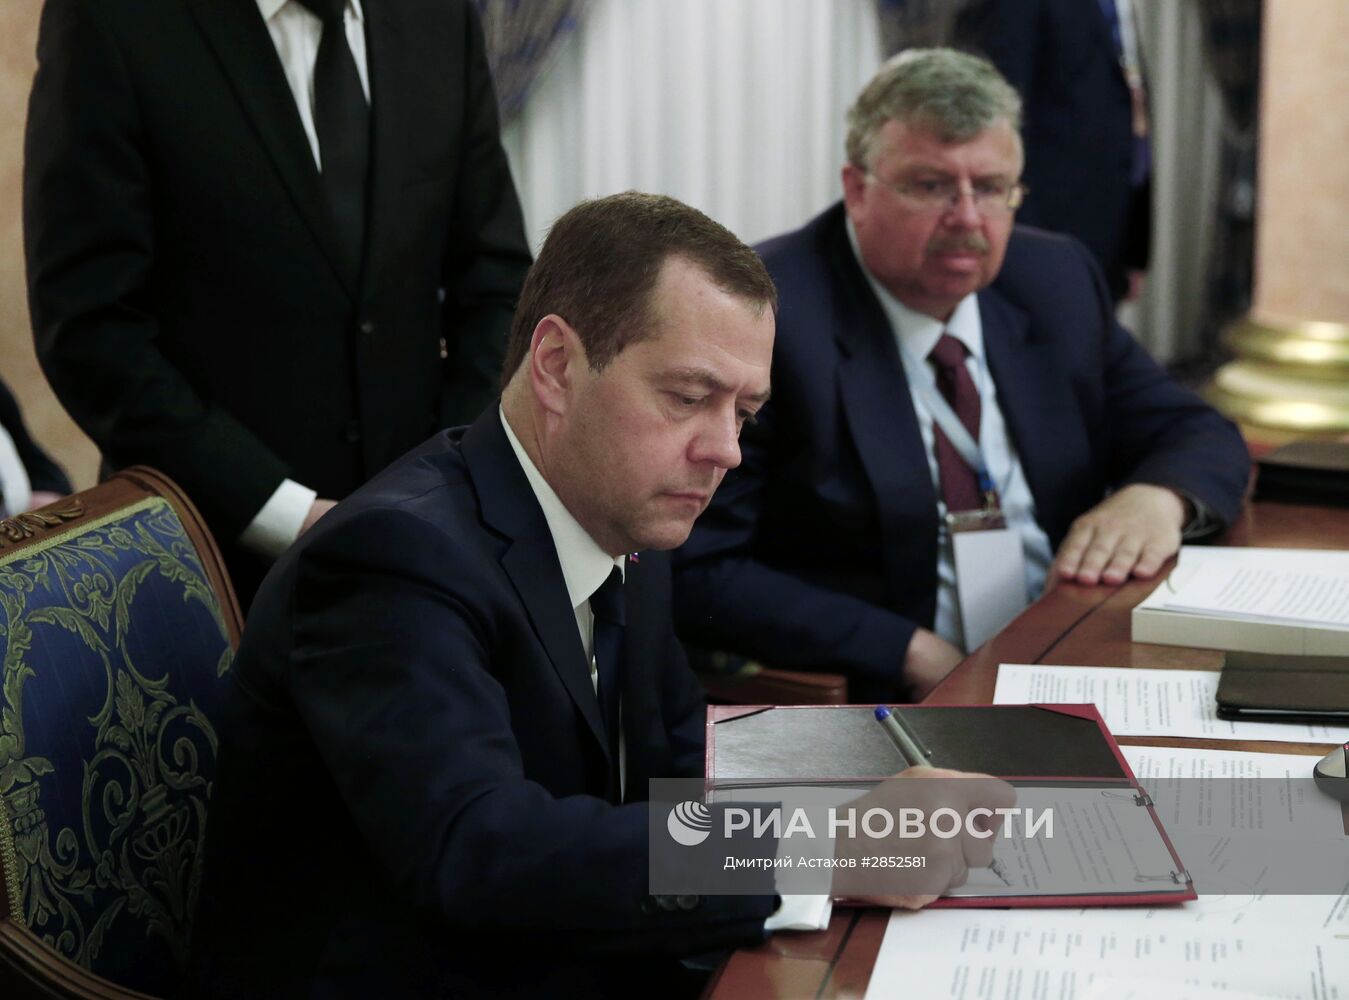 Премьер-министр РФ Д. Медведев в Ереване принимает участие в межправсовете ЕАЭС